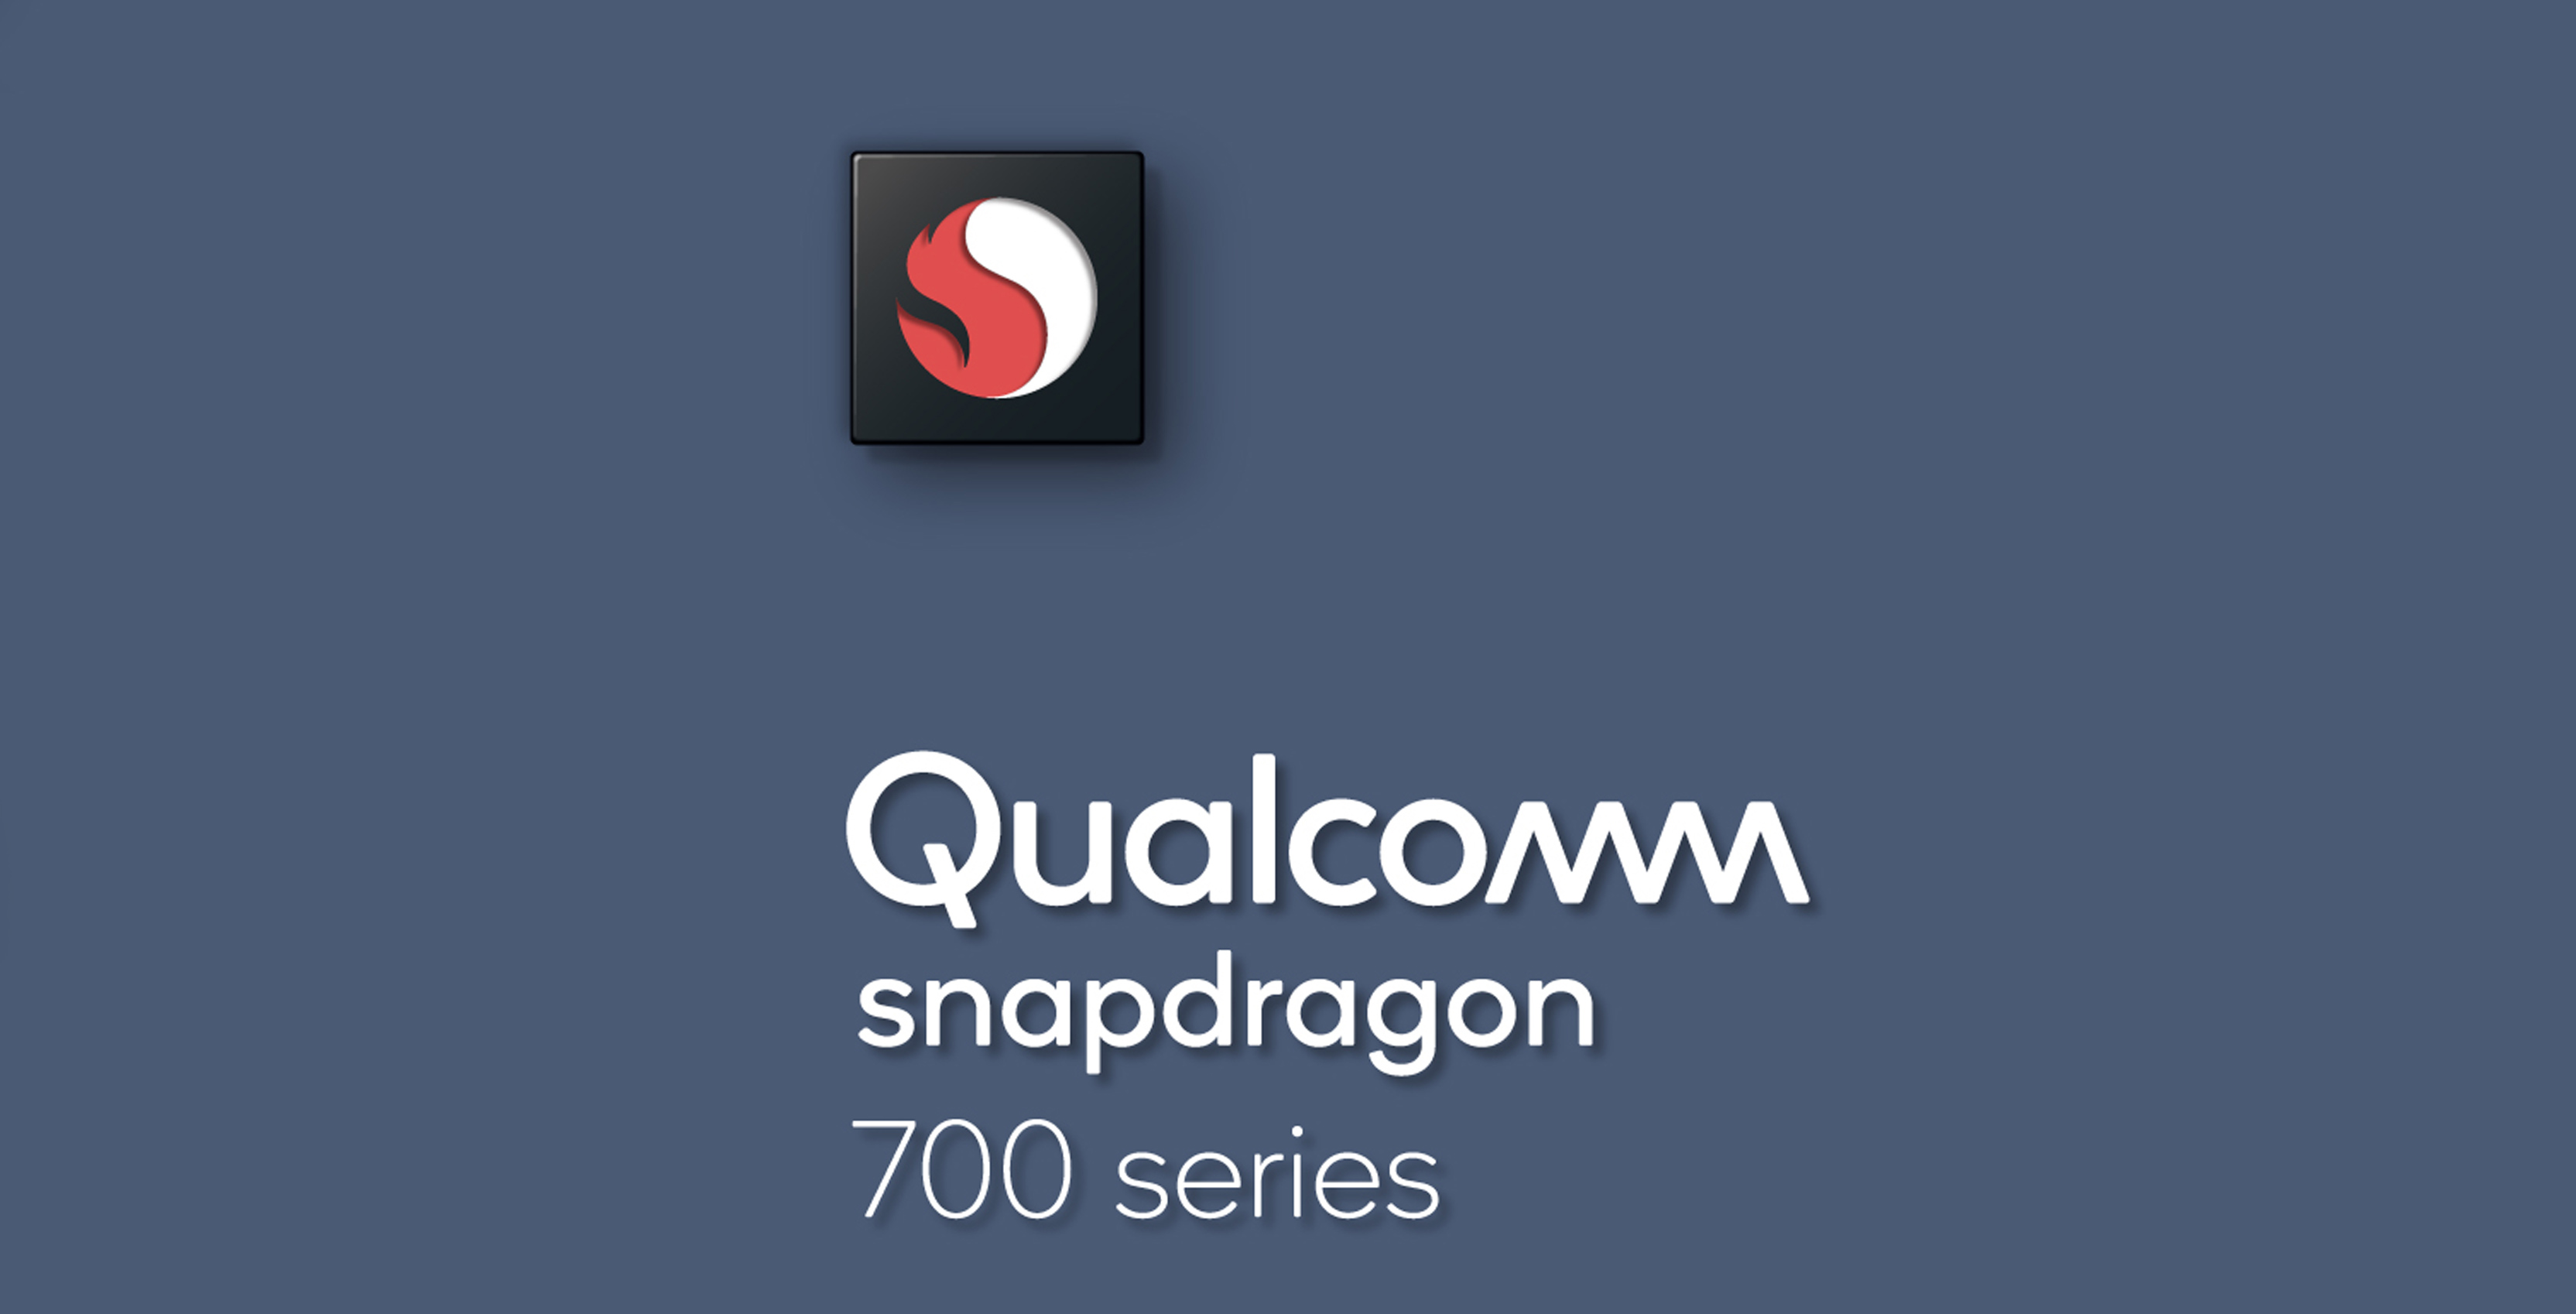 Qualcomm تكشف عن معالجات Snapdragon 700 التي تركز على الذكاء الاصطناعي